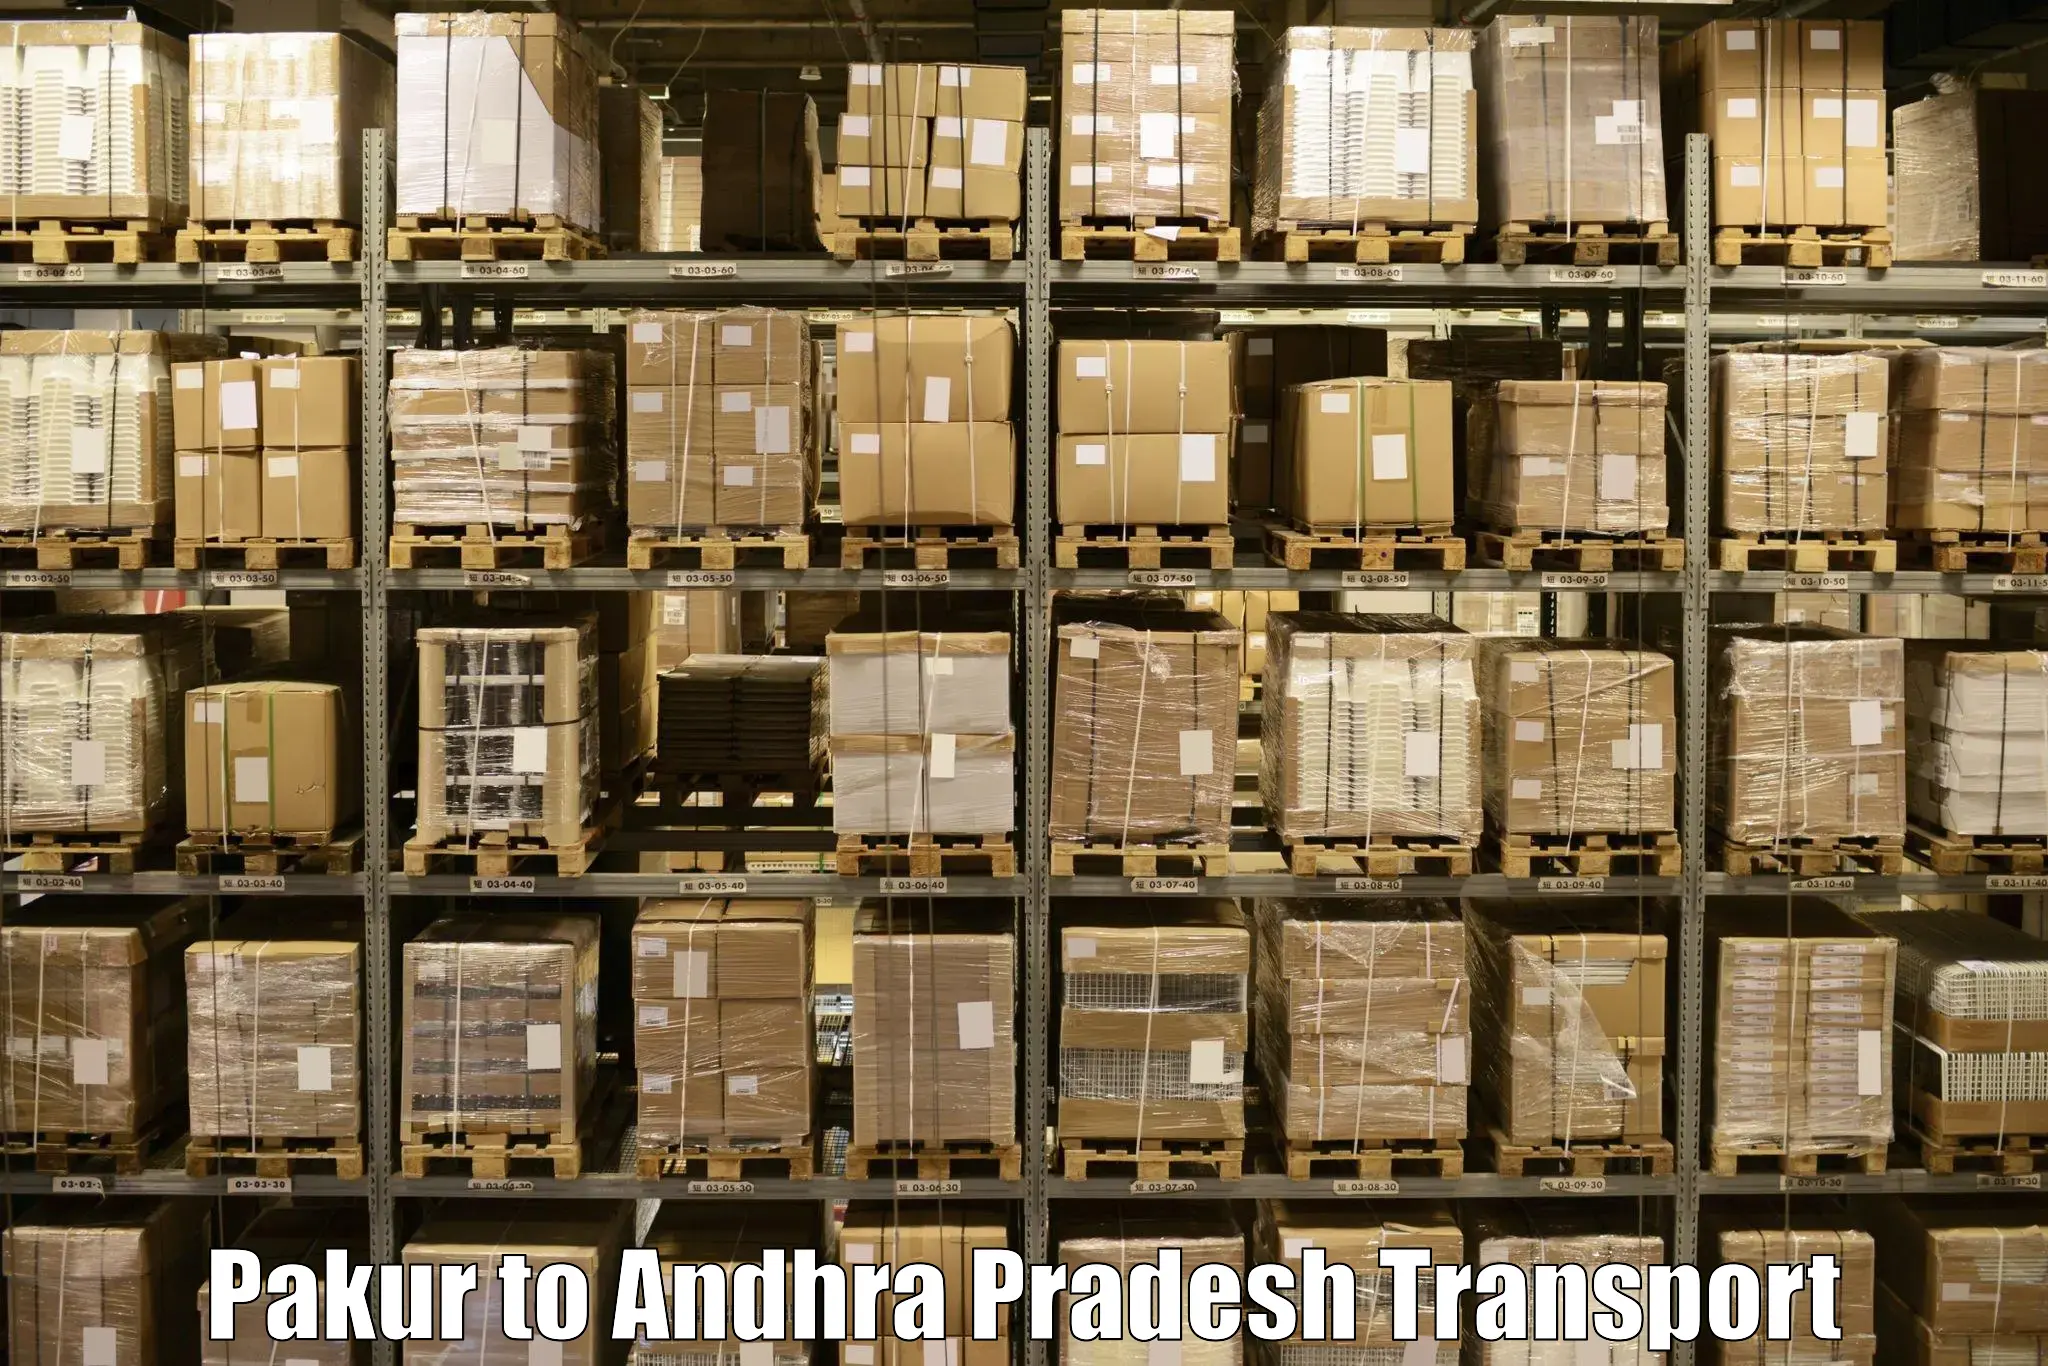 Vehicle courier services Pakur to Madakasira